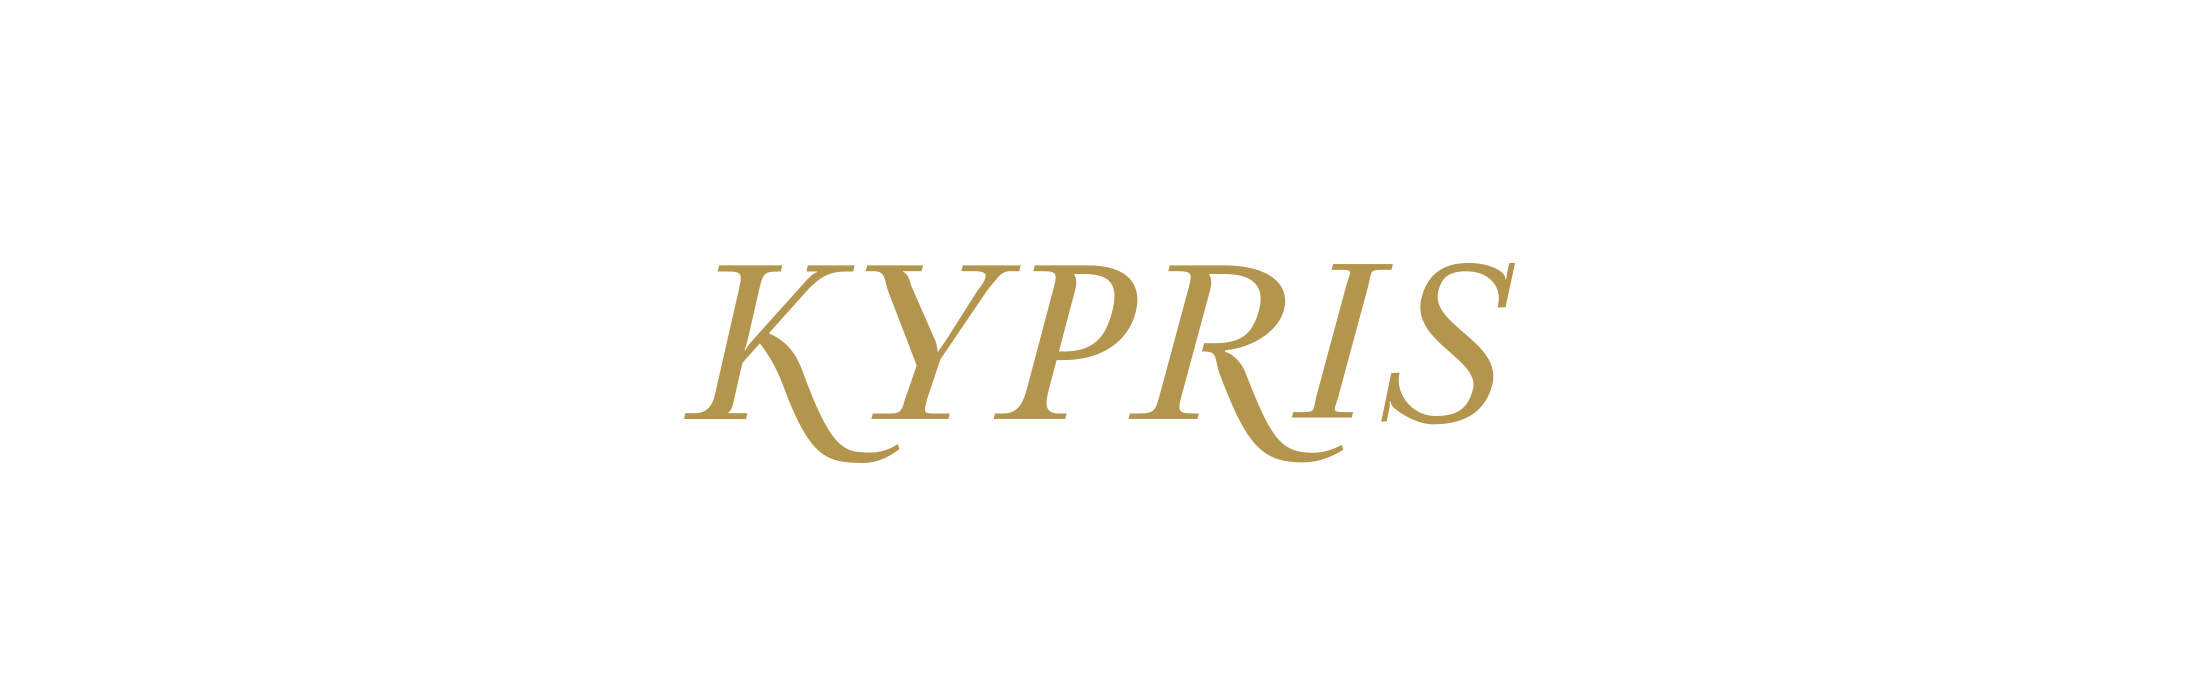 KYPRIS logo